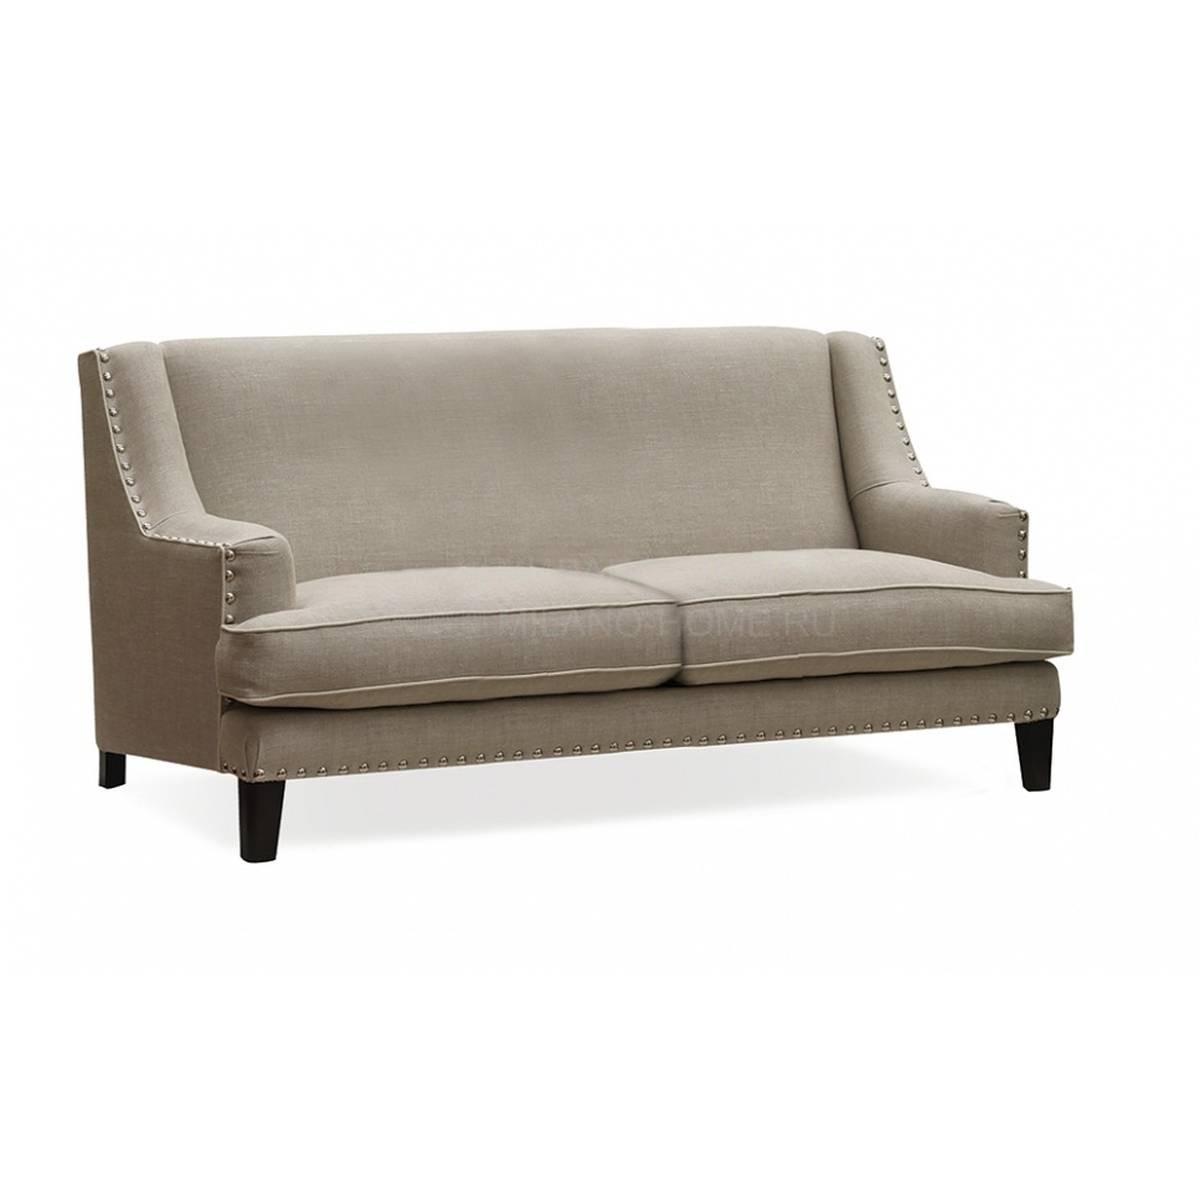 Прямой диван Berger/sofa из Испании фабрики MANUEL LARRAGA